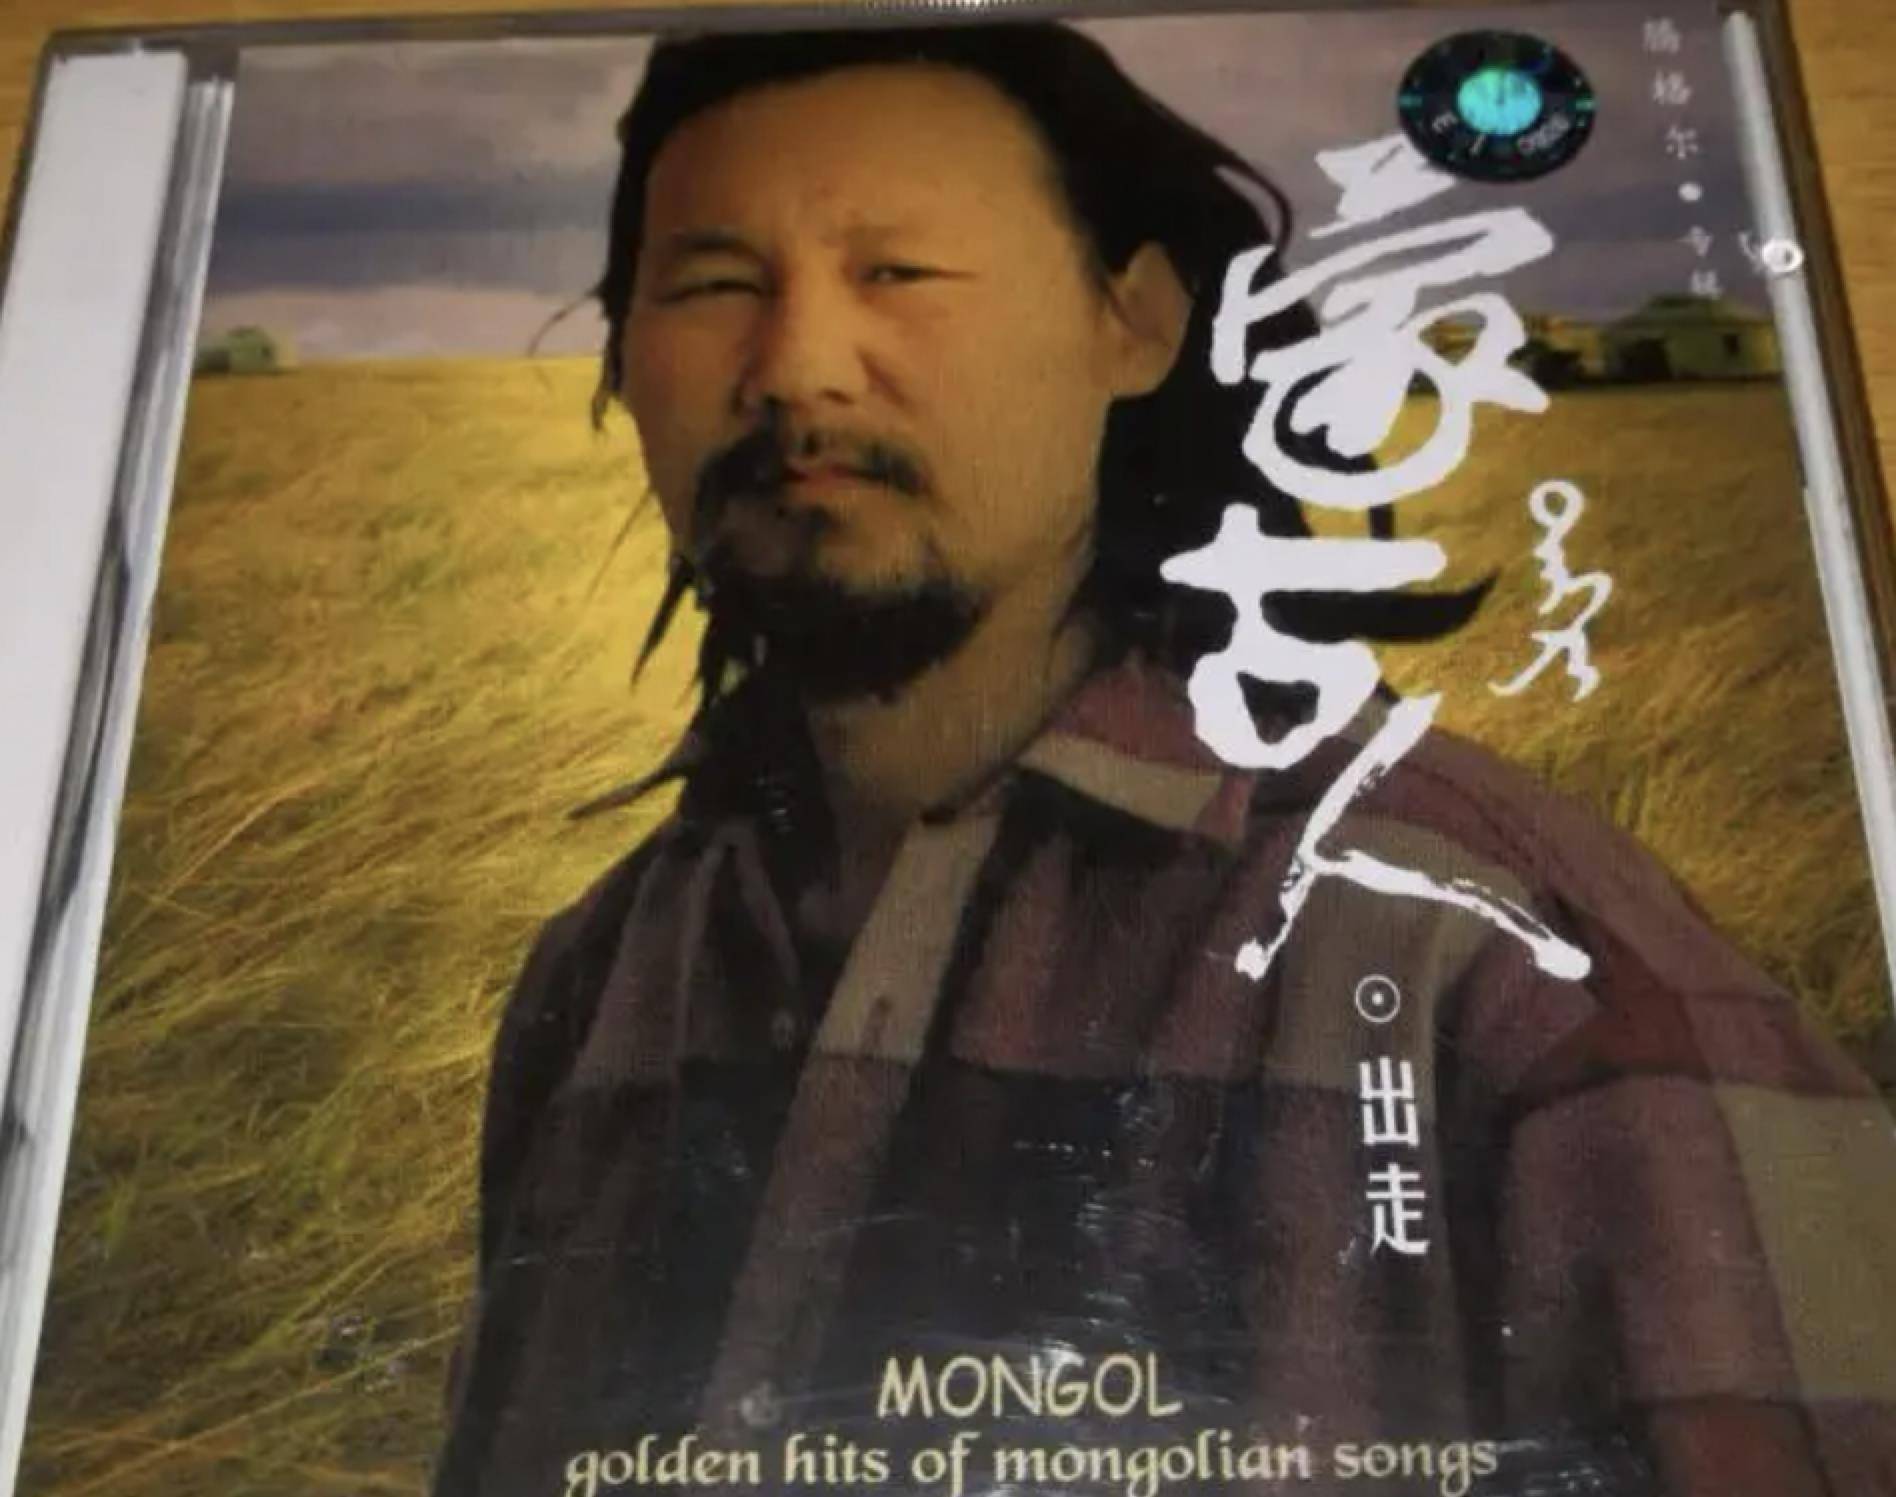 腾格尔的歌,唱出了蒙古人真实的生活,唱进千千万万蒙古人的心里,这首